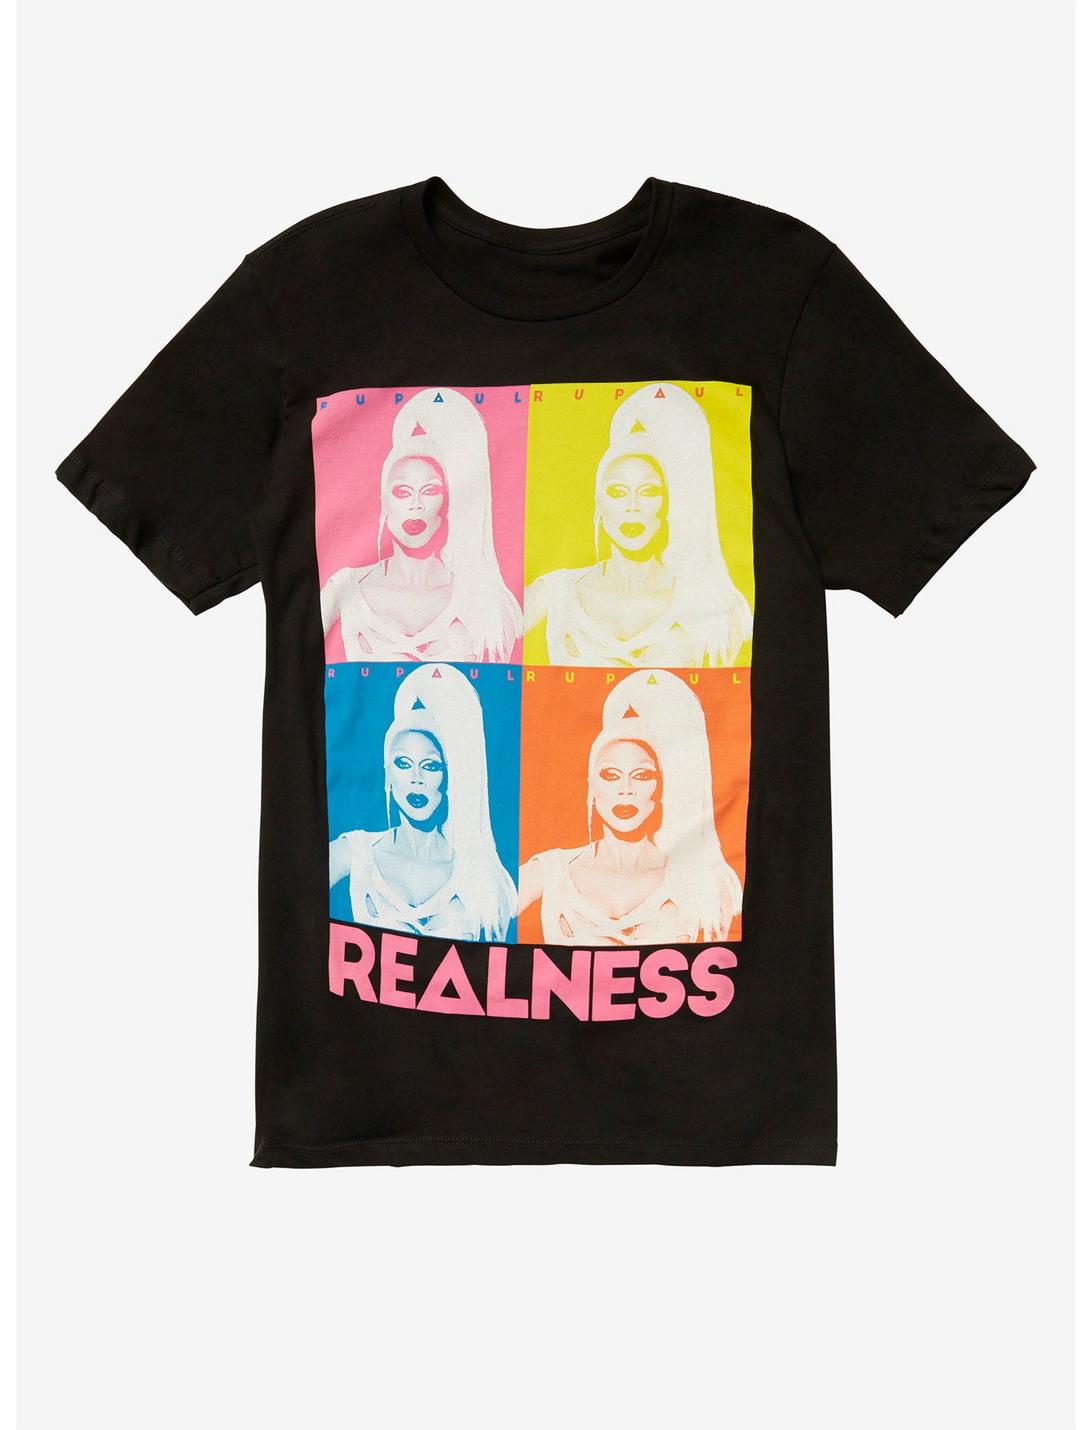 RuPaul Realness Pop Art Photo Grid T-Shirt Hot Topic Exclusive, BLACK, hi-res